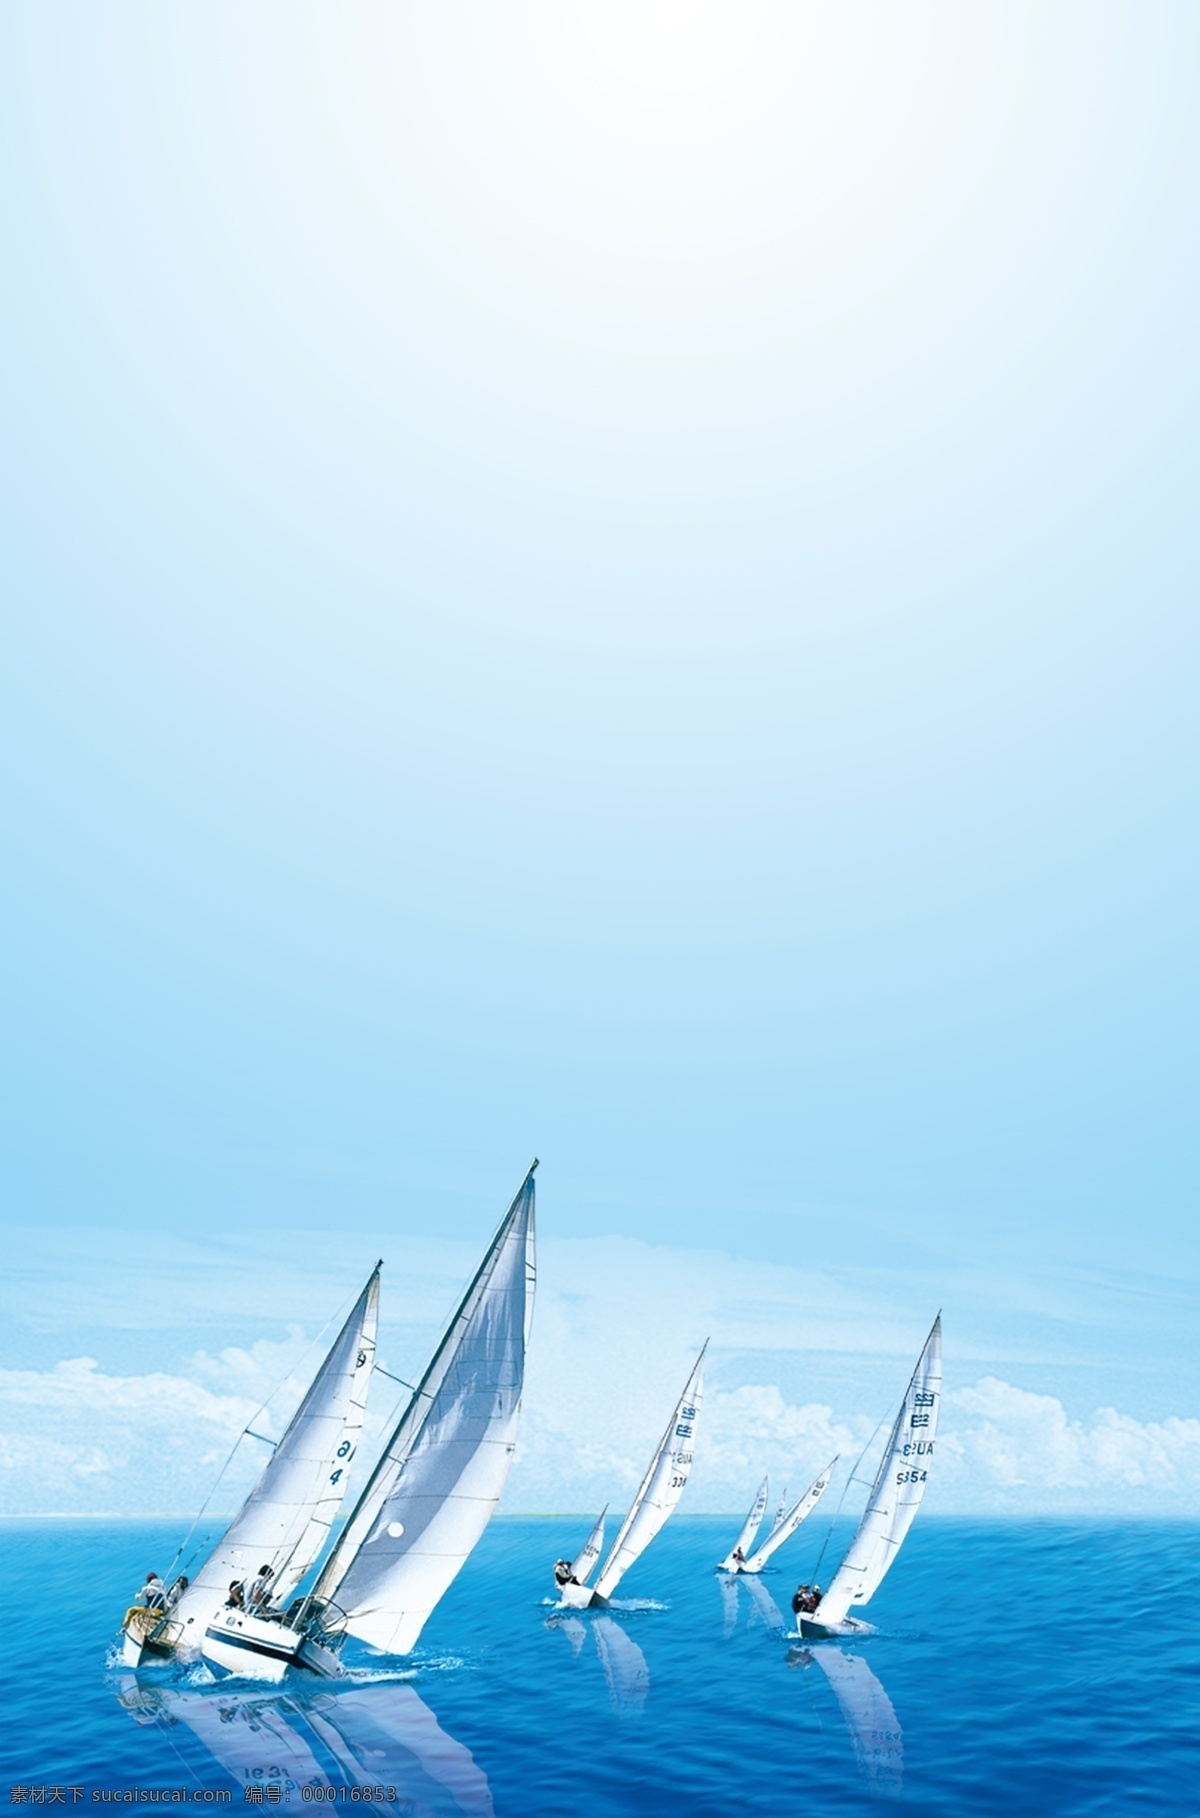 蓝色背景 会议宣传板 企业文化 背景 帆船 海洋 水 蓝色 底图